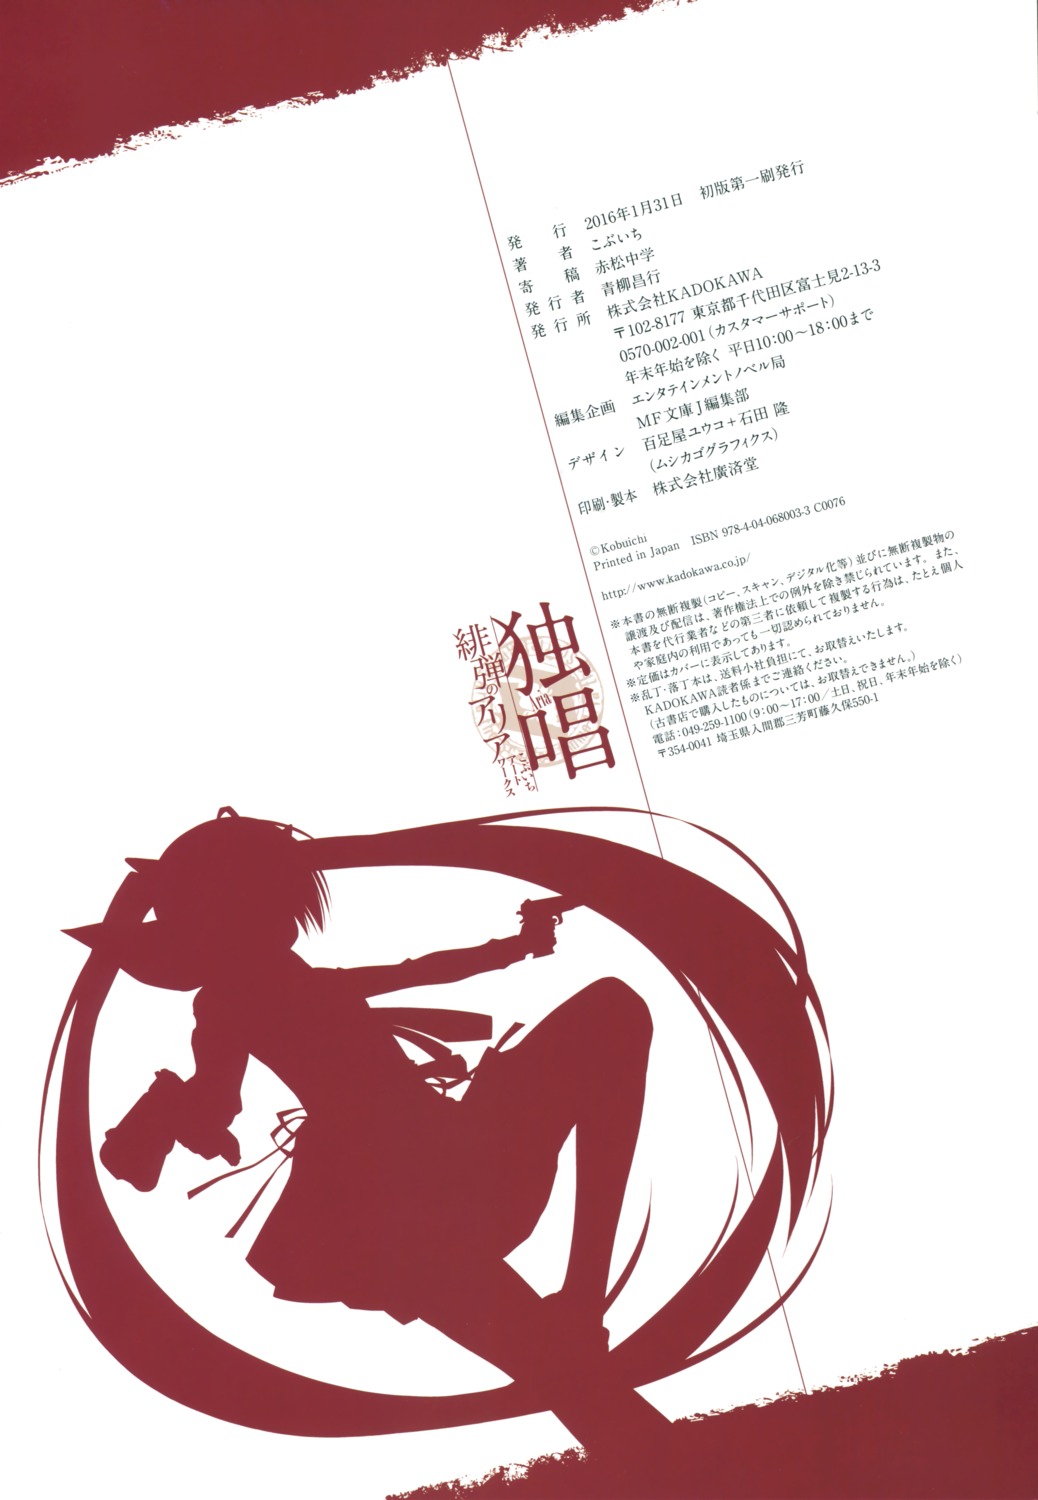 hidan_no_aria kanzaki_h_aria kobuichi silhouette text